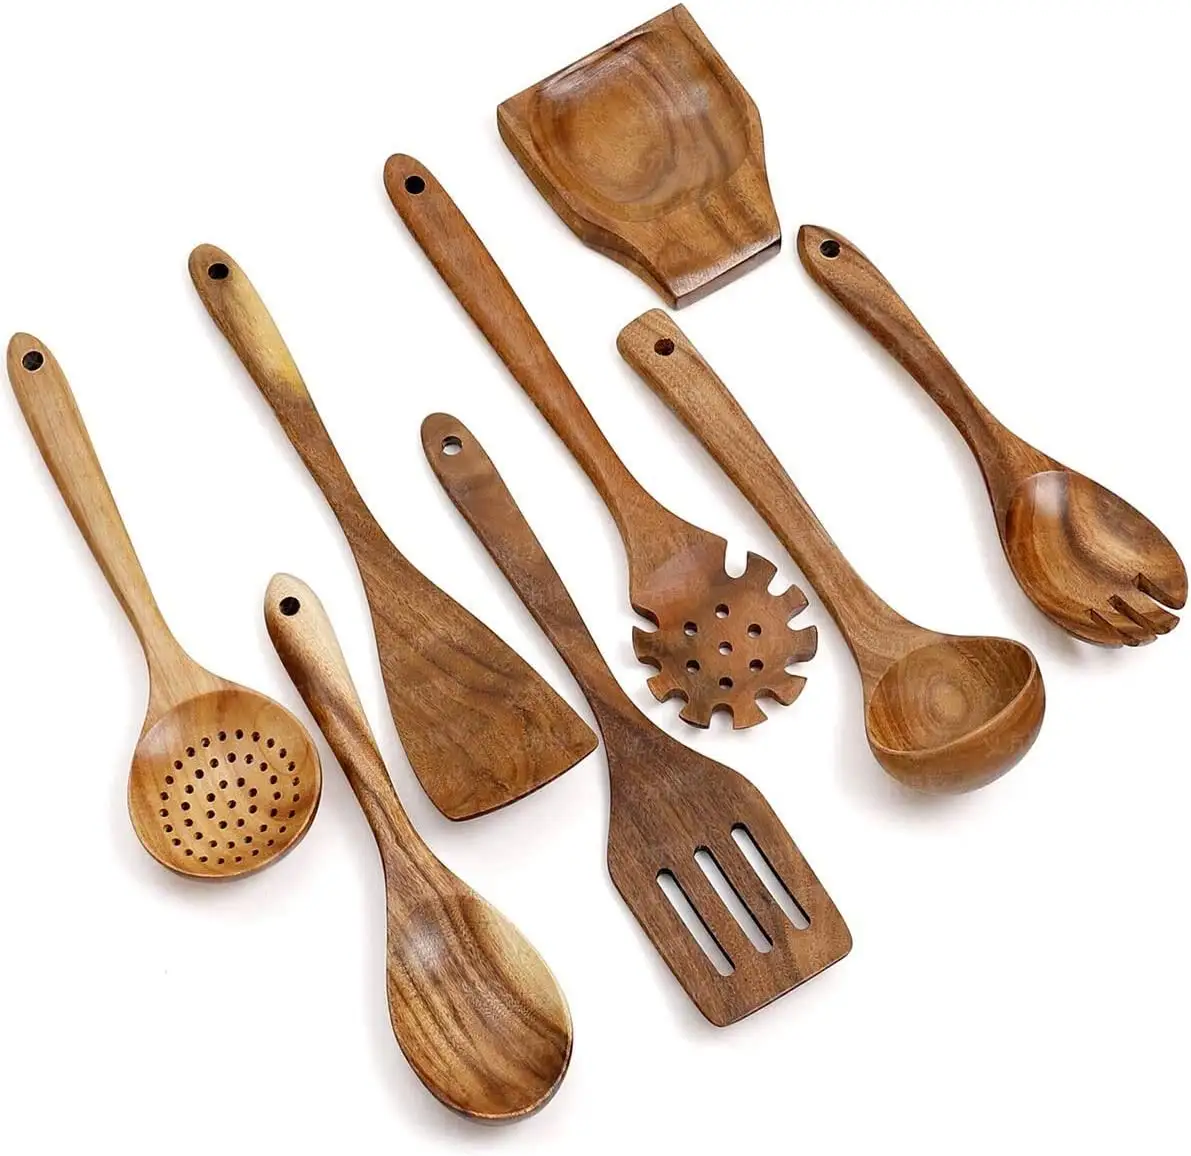 Set di utensili da cucina in legno Set di utensili da cucina in bambù non patinato lavabile in lavastoviglie con fori, cucchiai in legno di Teak biologico per cucinare